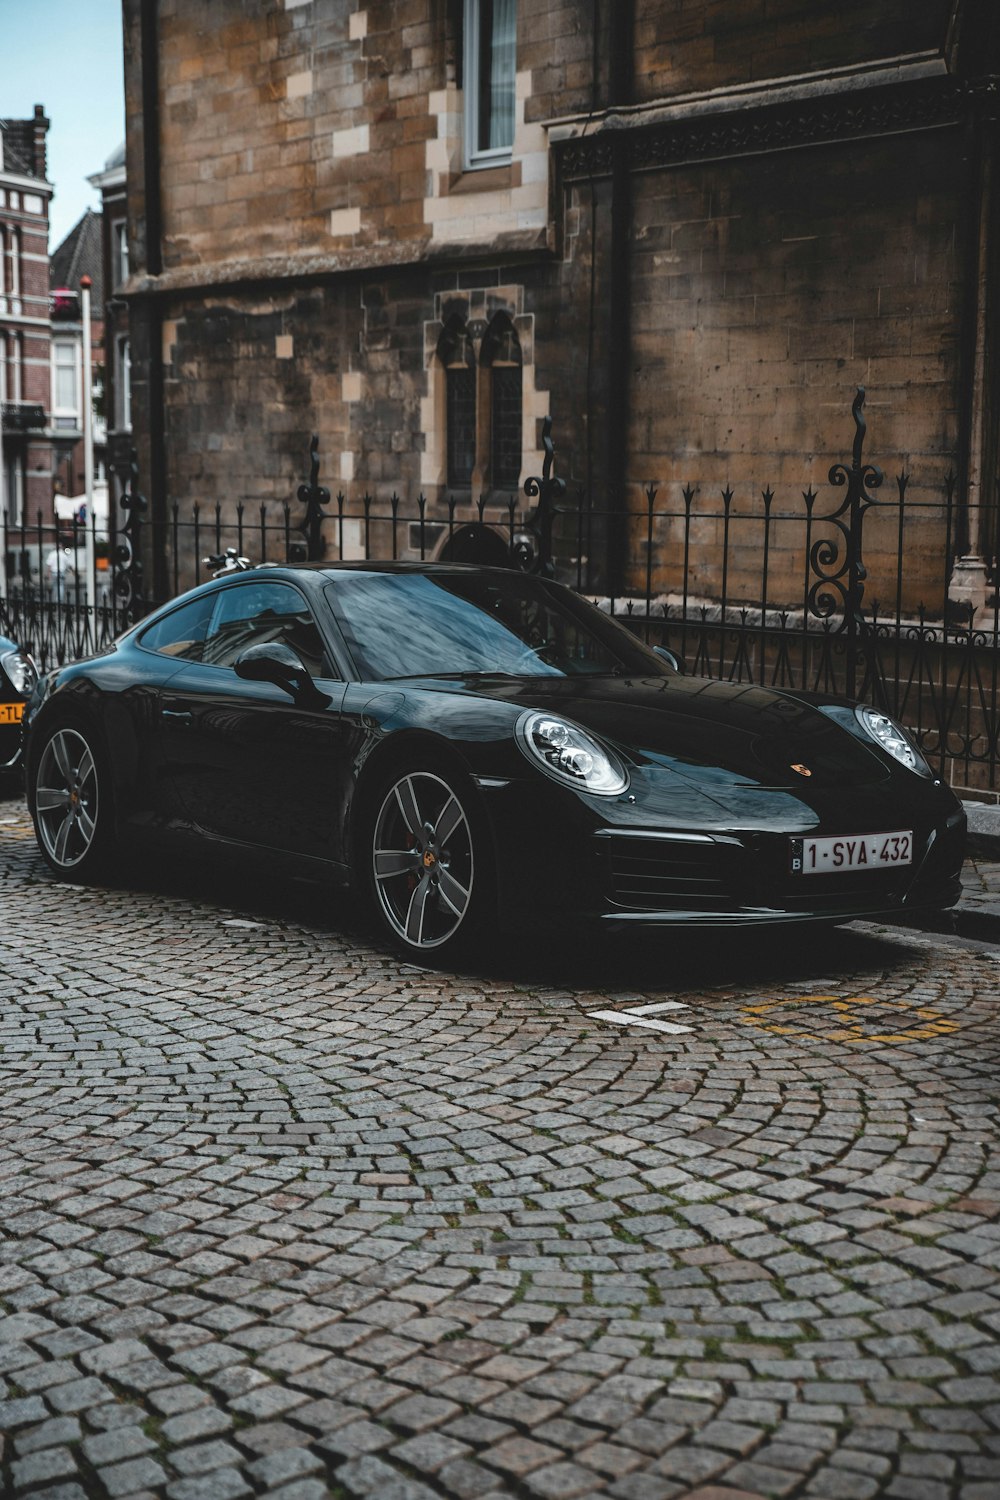 Schwarzer Porsche 911 tagsüber auf Gehweg geparkt